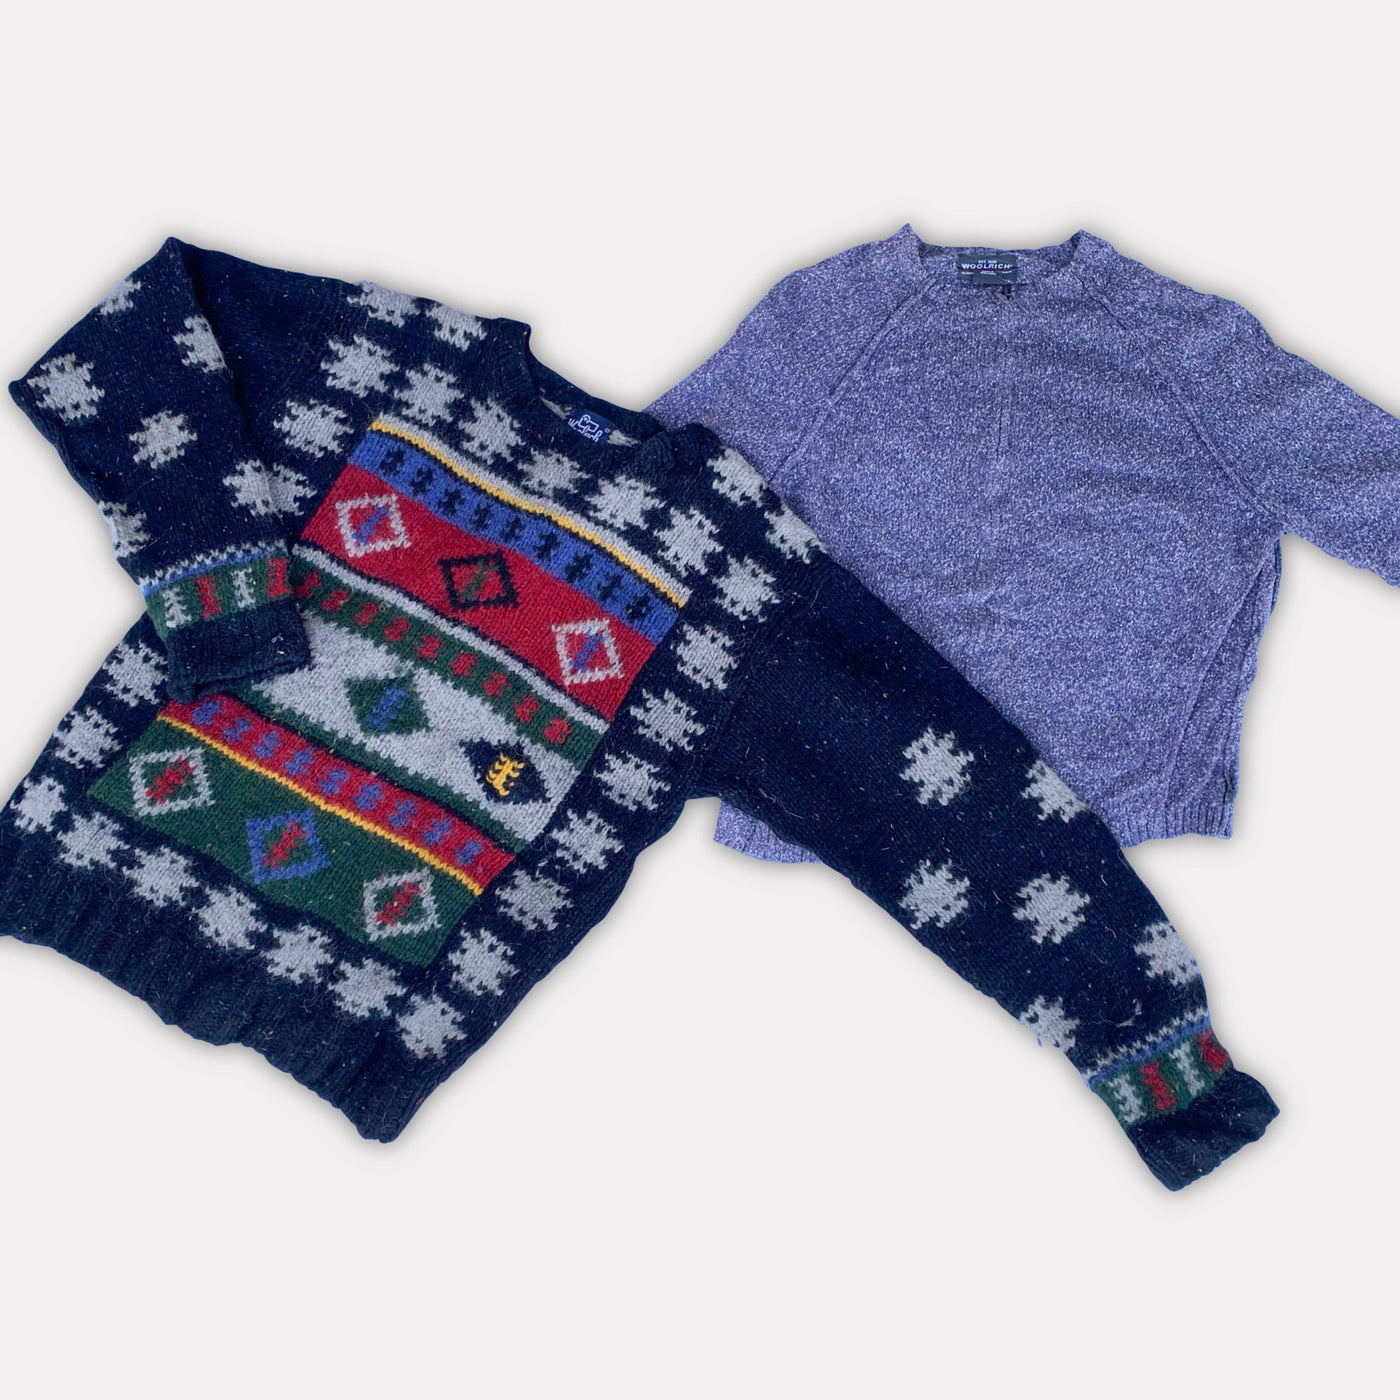 20 True Vintage Knitwear/Wool Sweaters